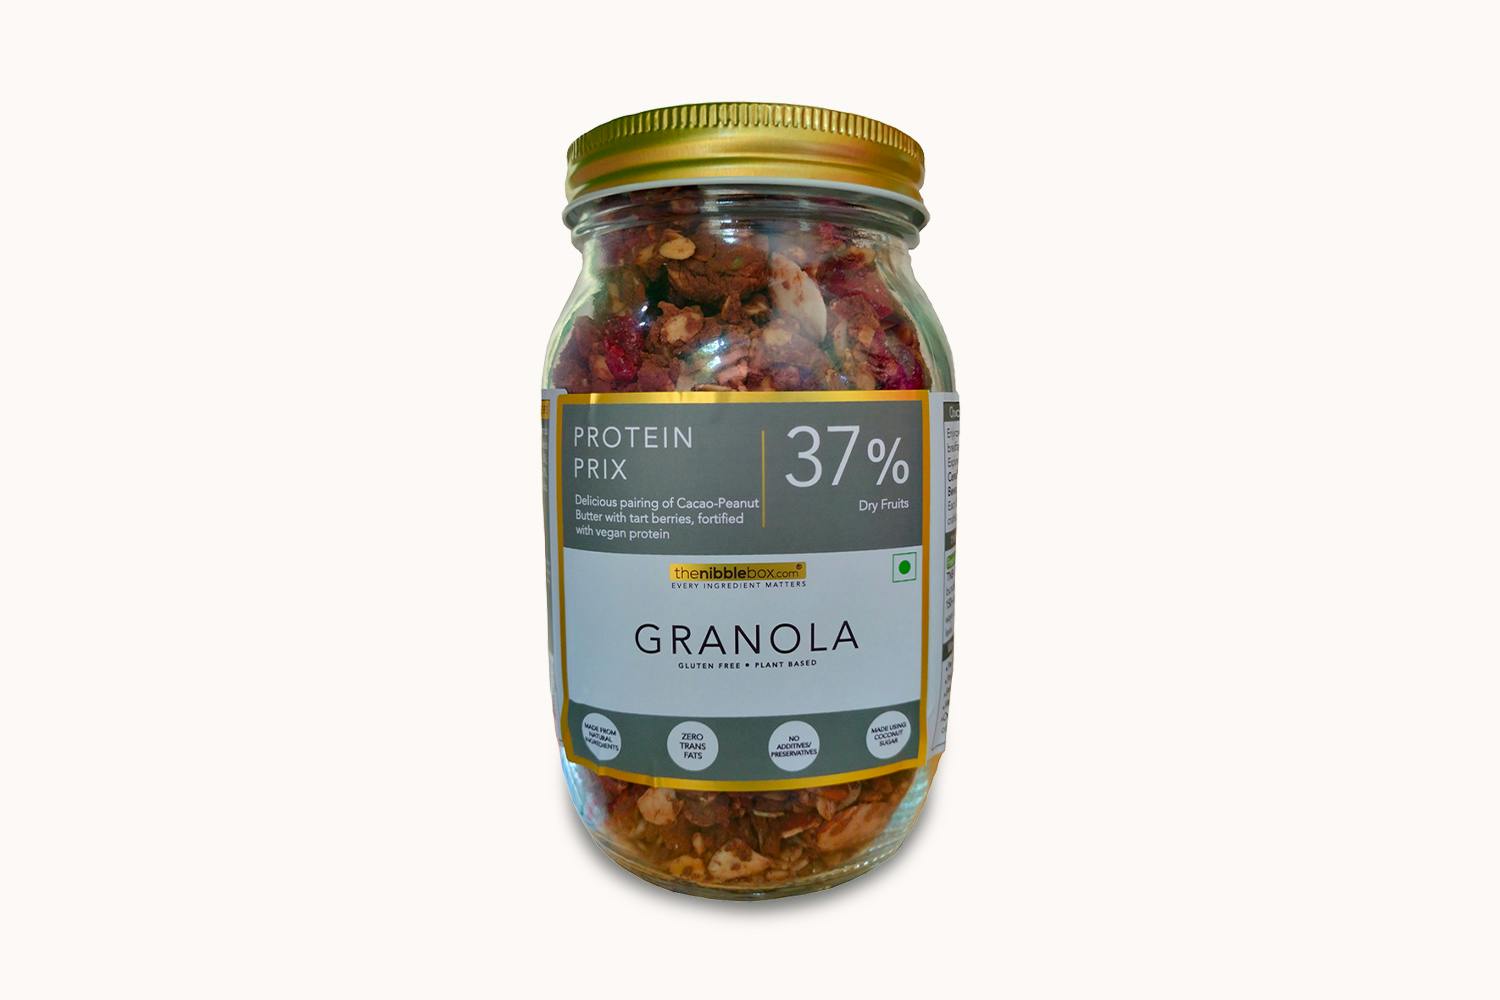 The Nibble Box Protein Prix Breakfast Granola